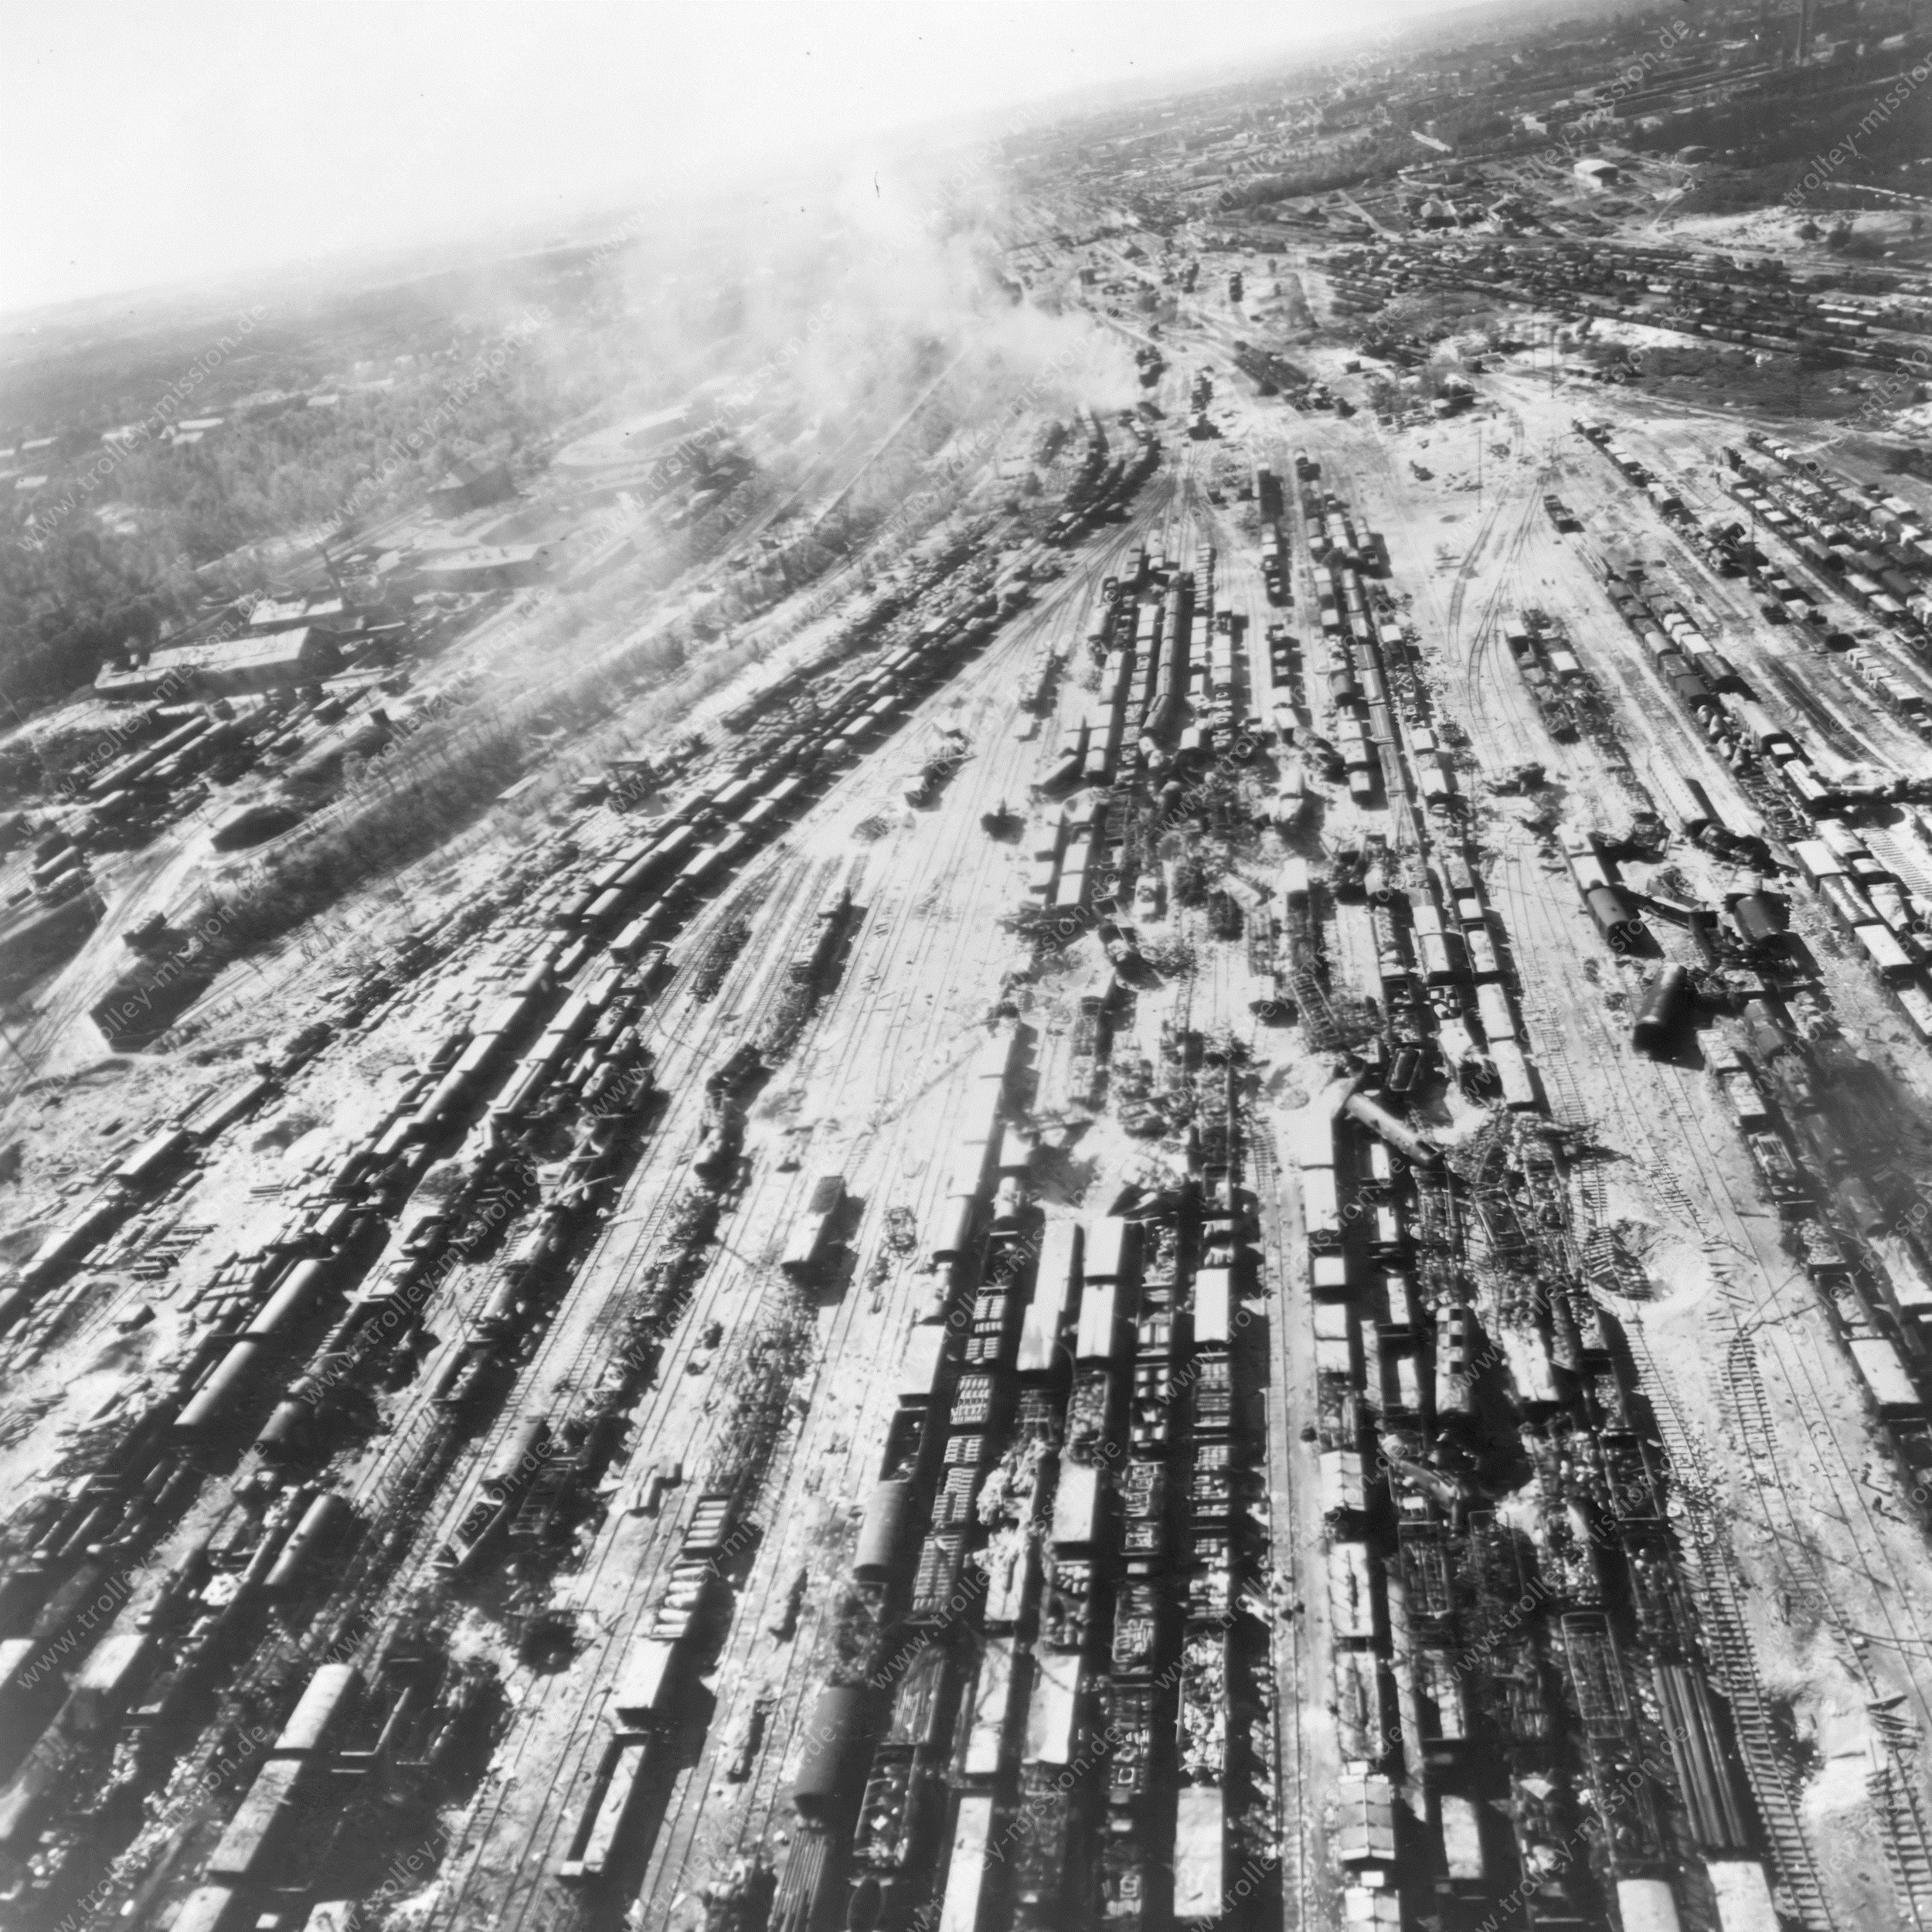 Nürnberg Rangierbahnhof - Luftbild aus dem Zweiten Weltkrieg